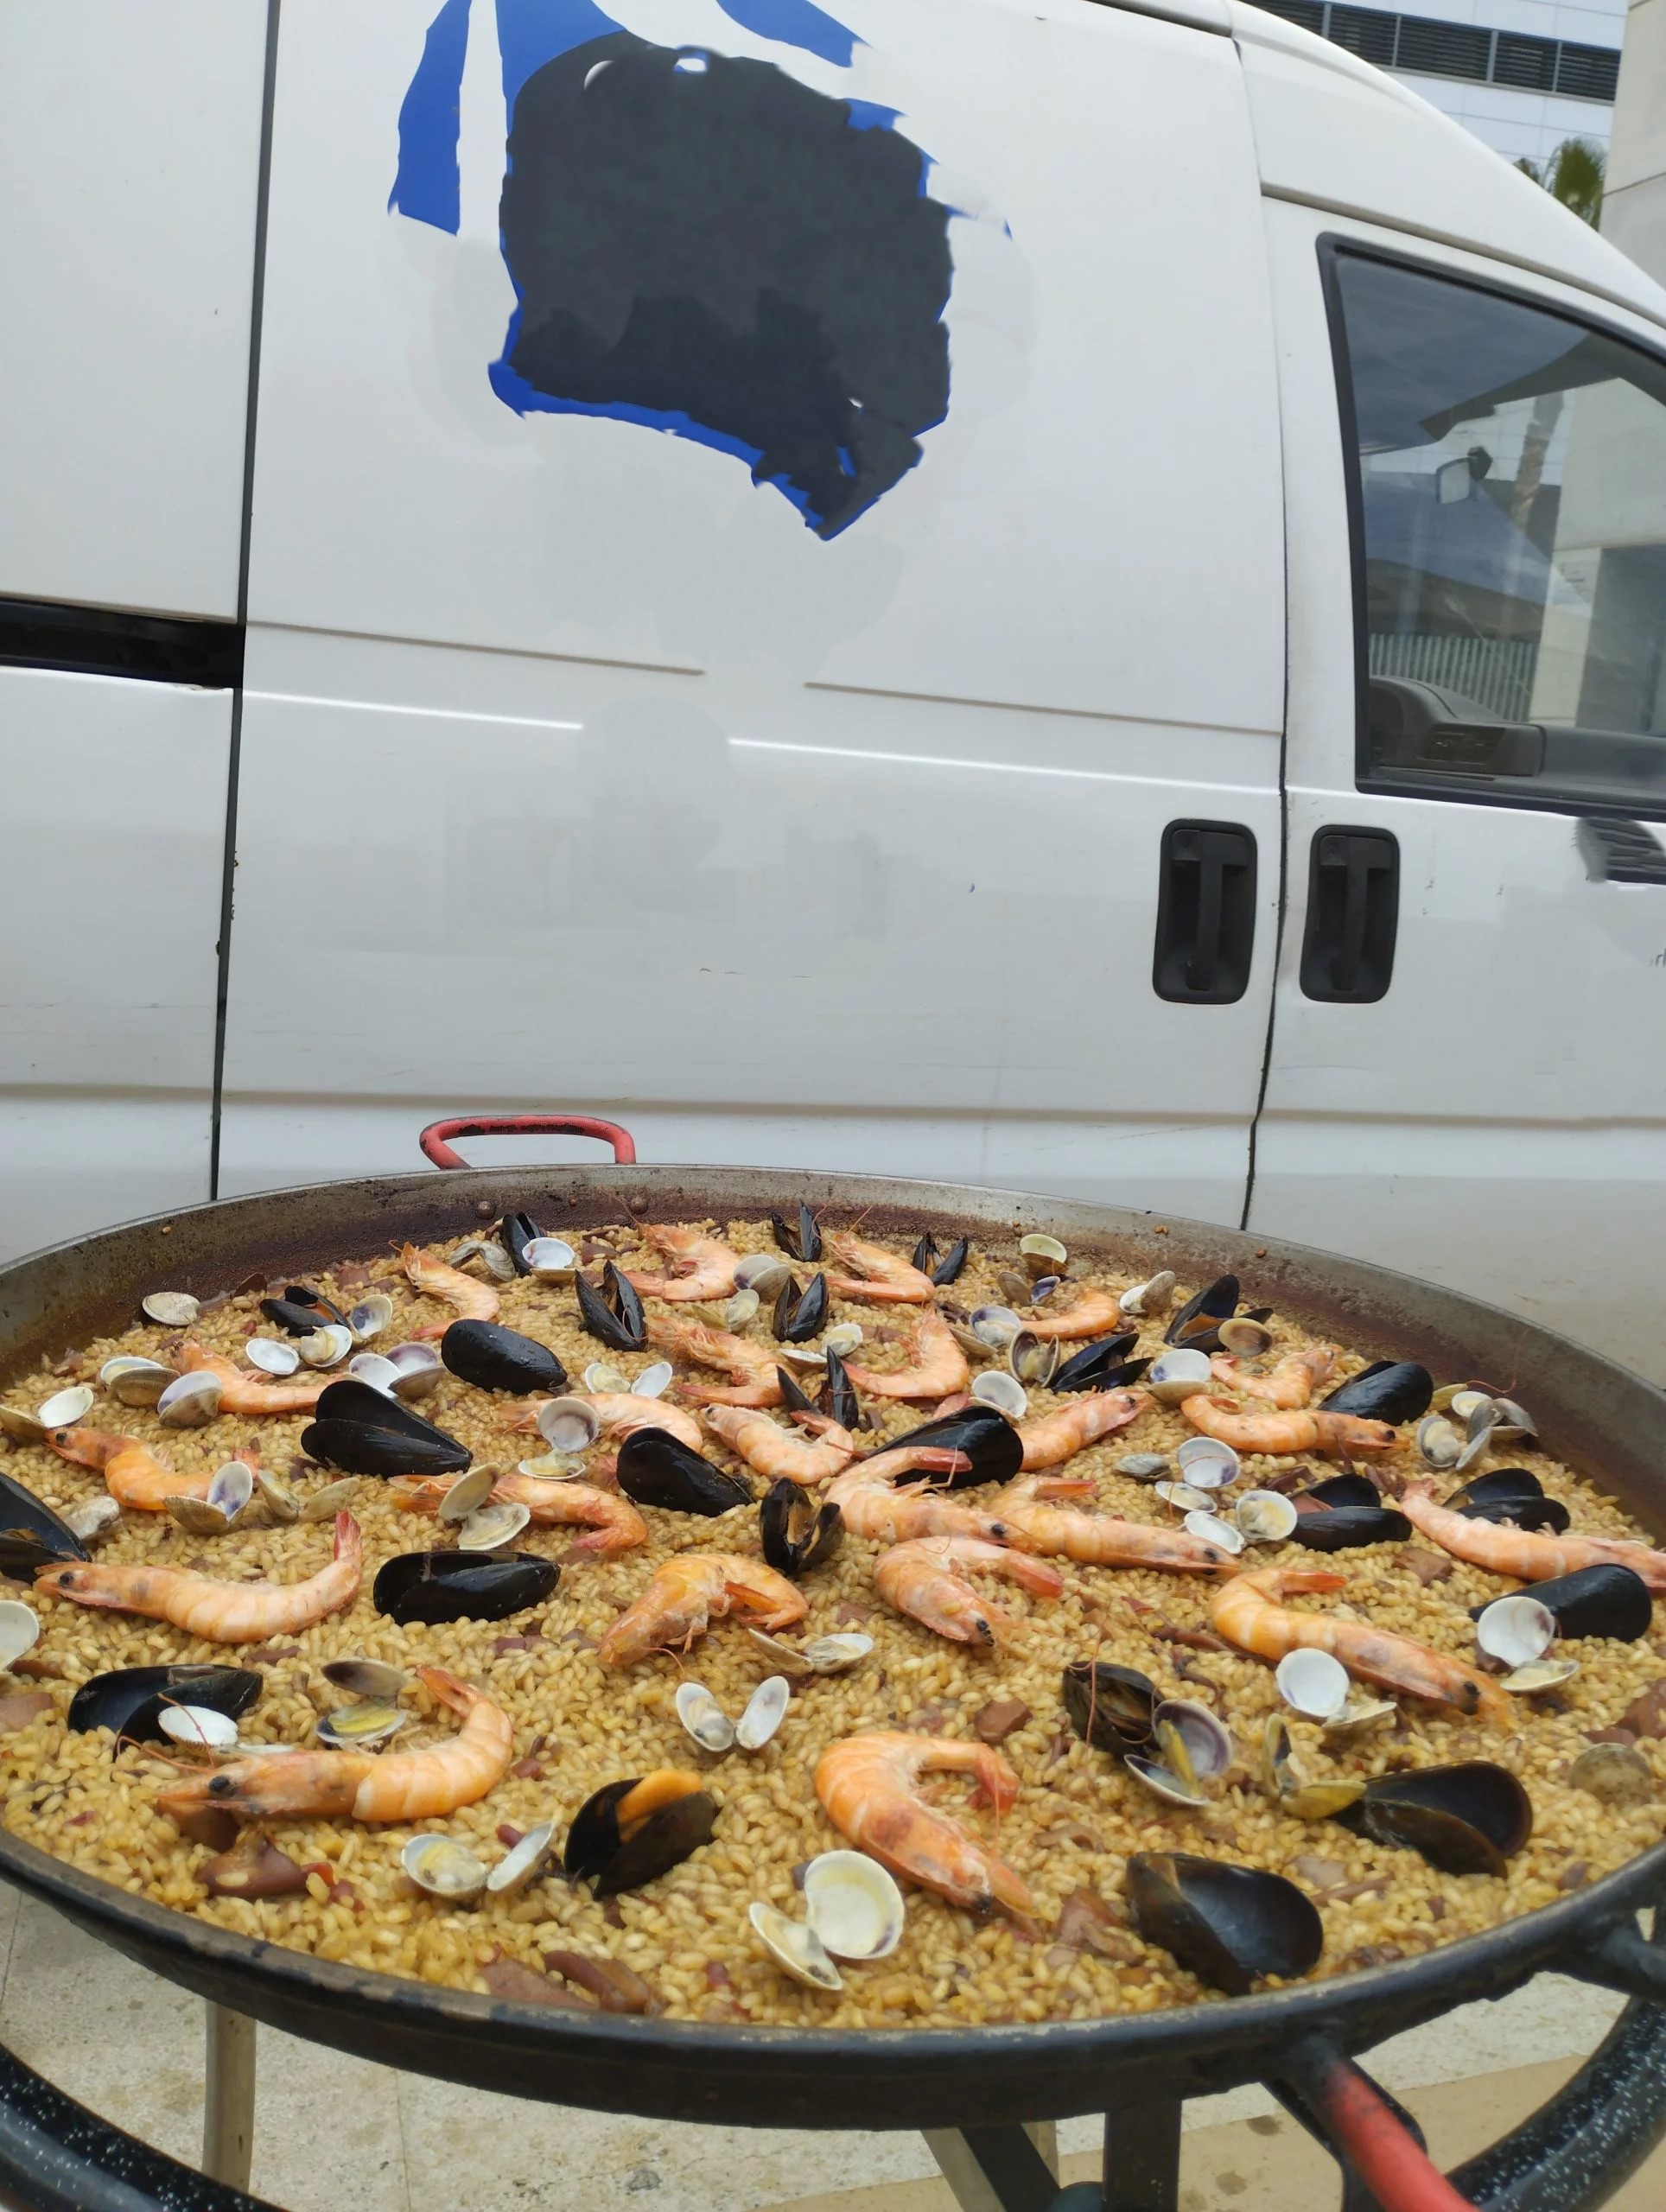 Traspaso de Restaurante Arrosseria/catering con amplia terraza (Tarragona)